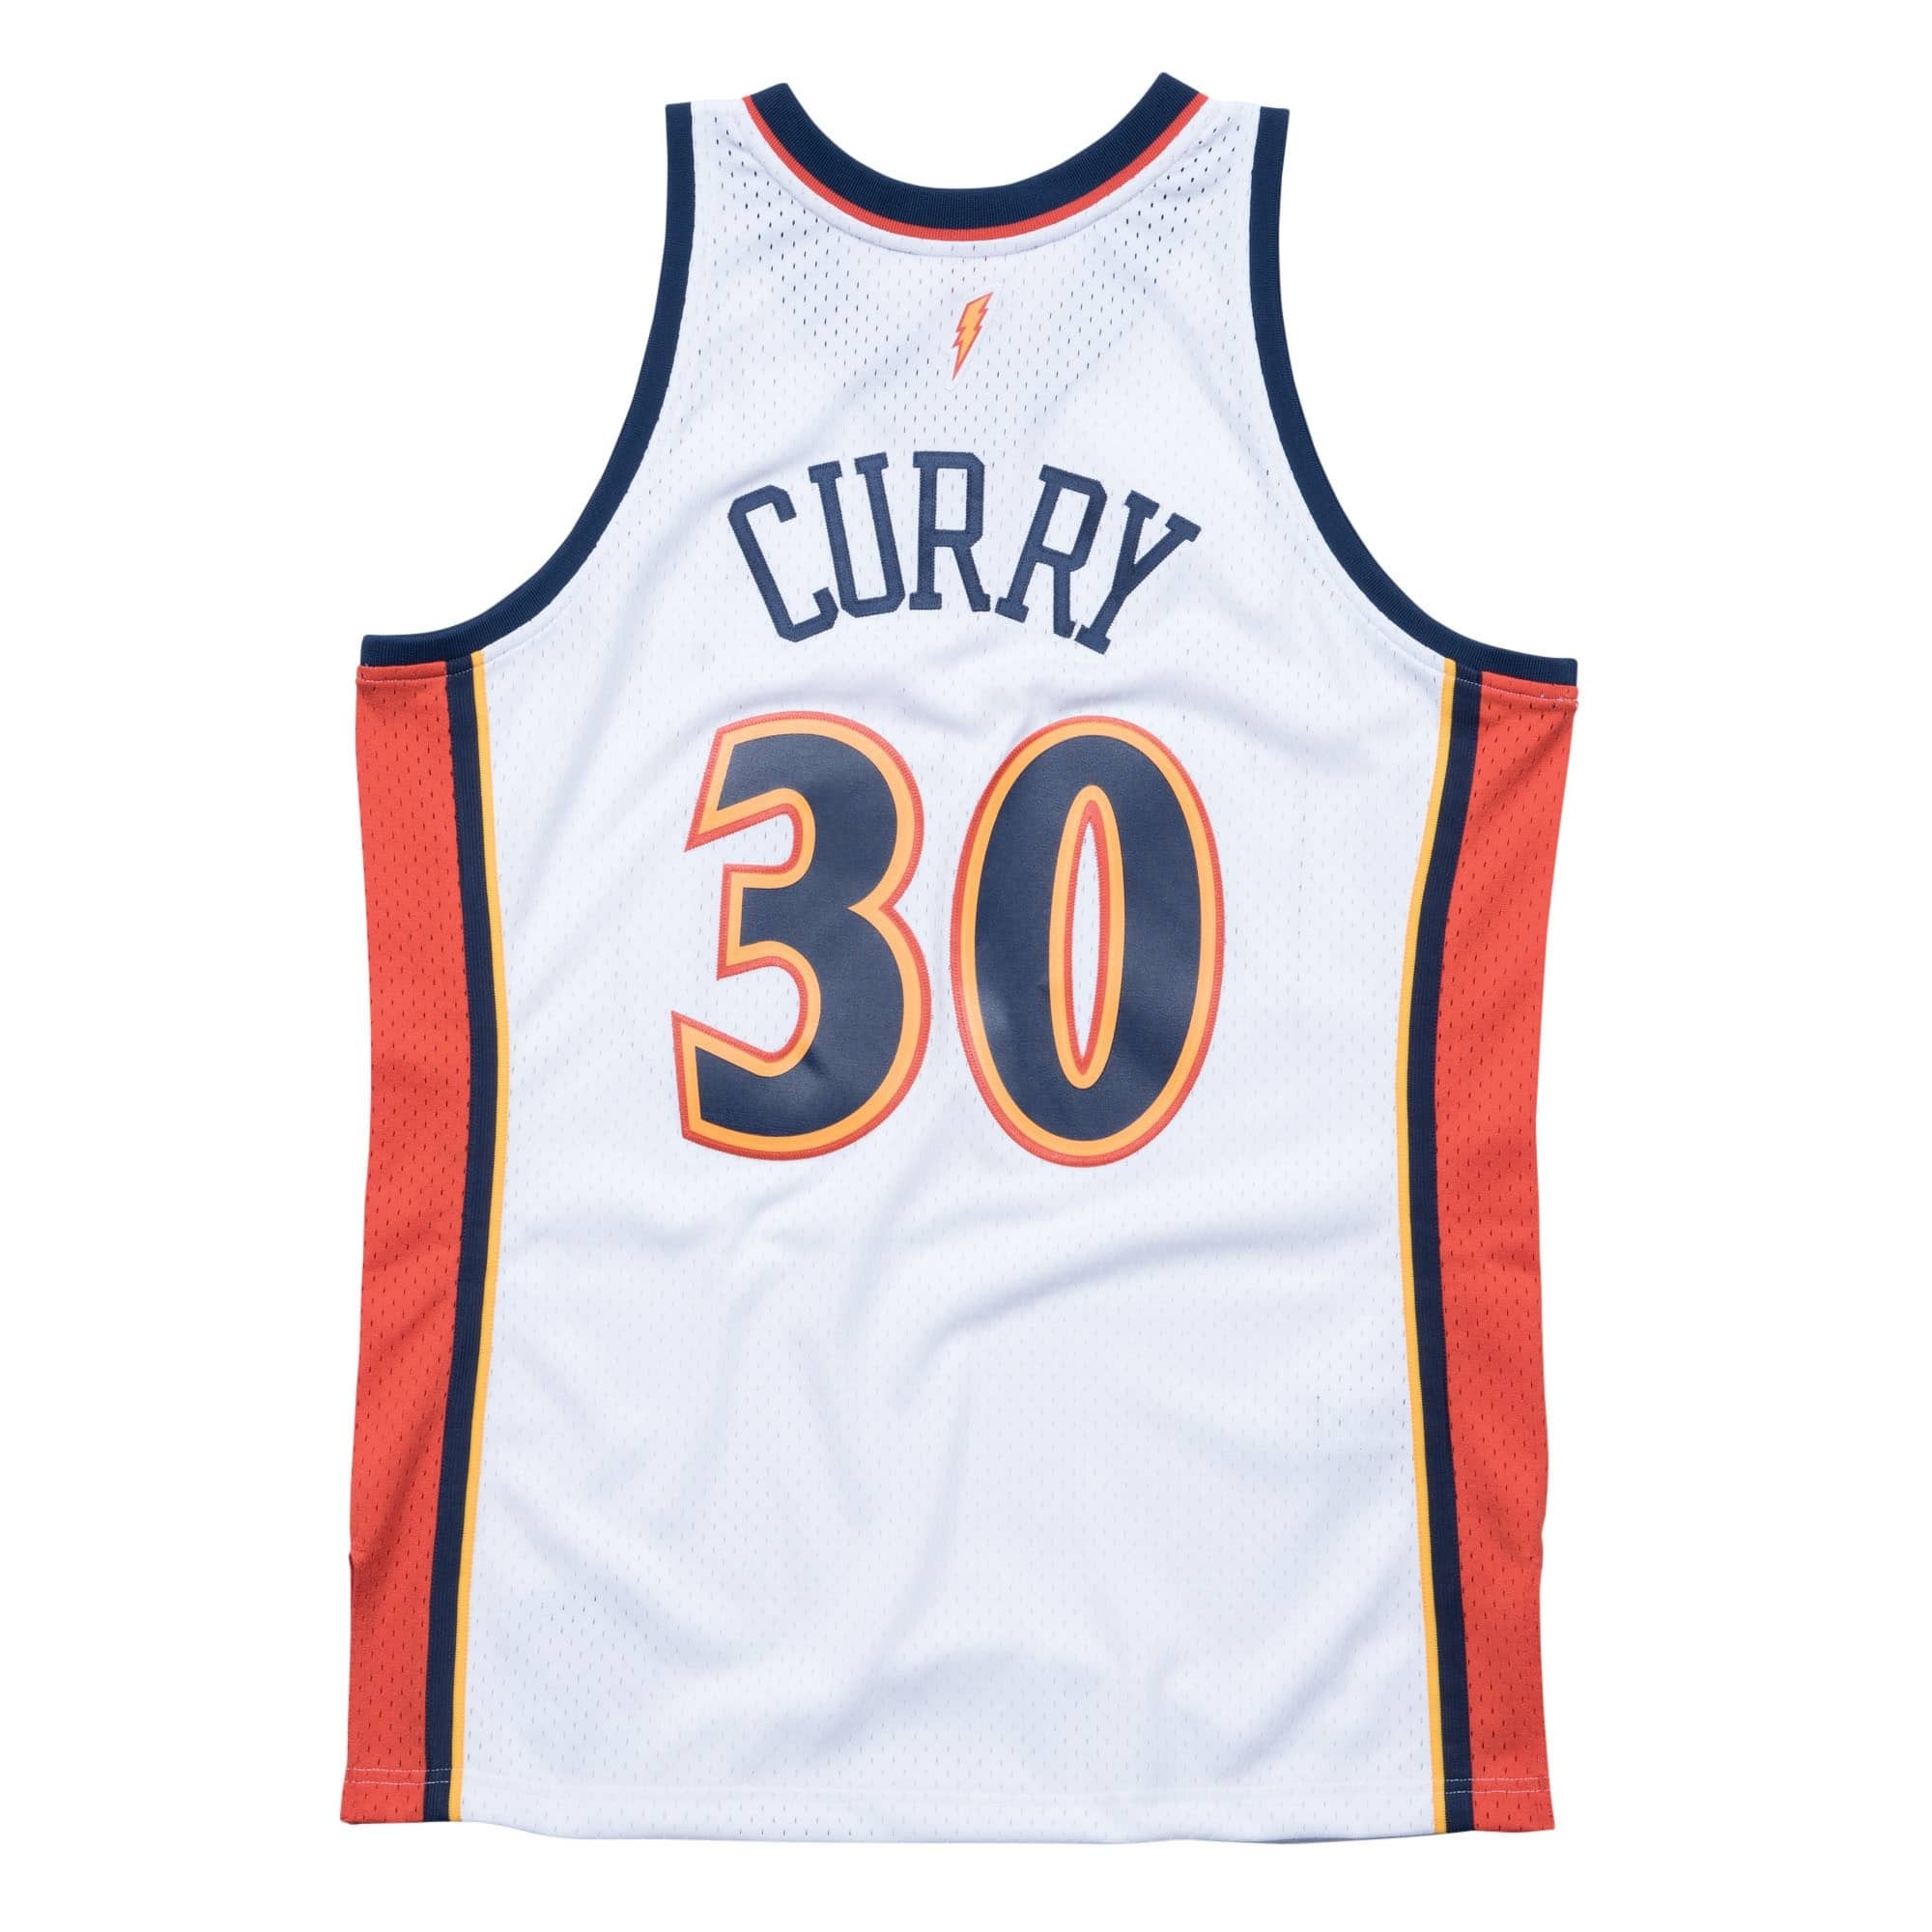 No esencial en un día festivo arco Swingman NBA Stephen Curry Golden State Warriors Blanca